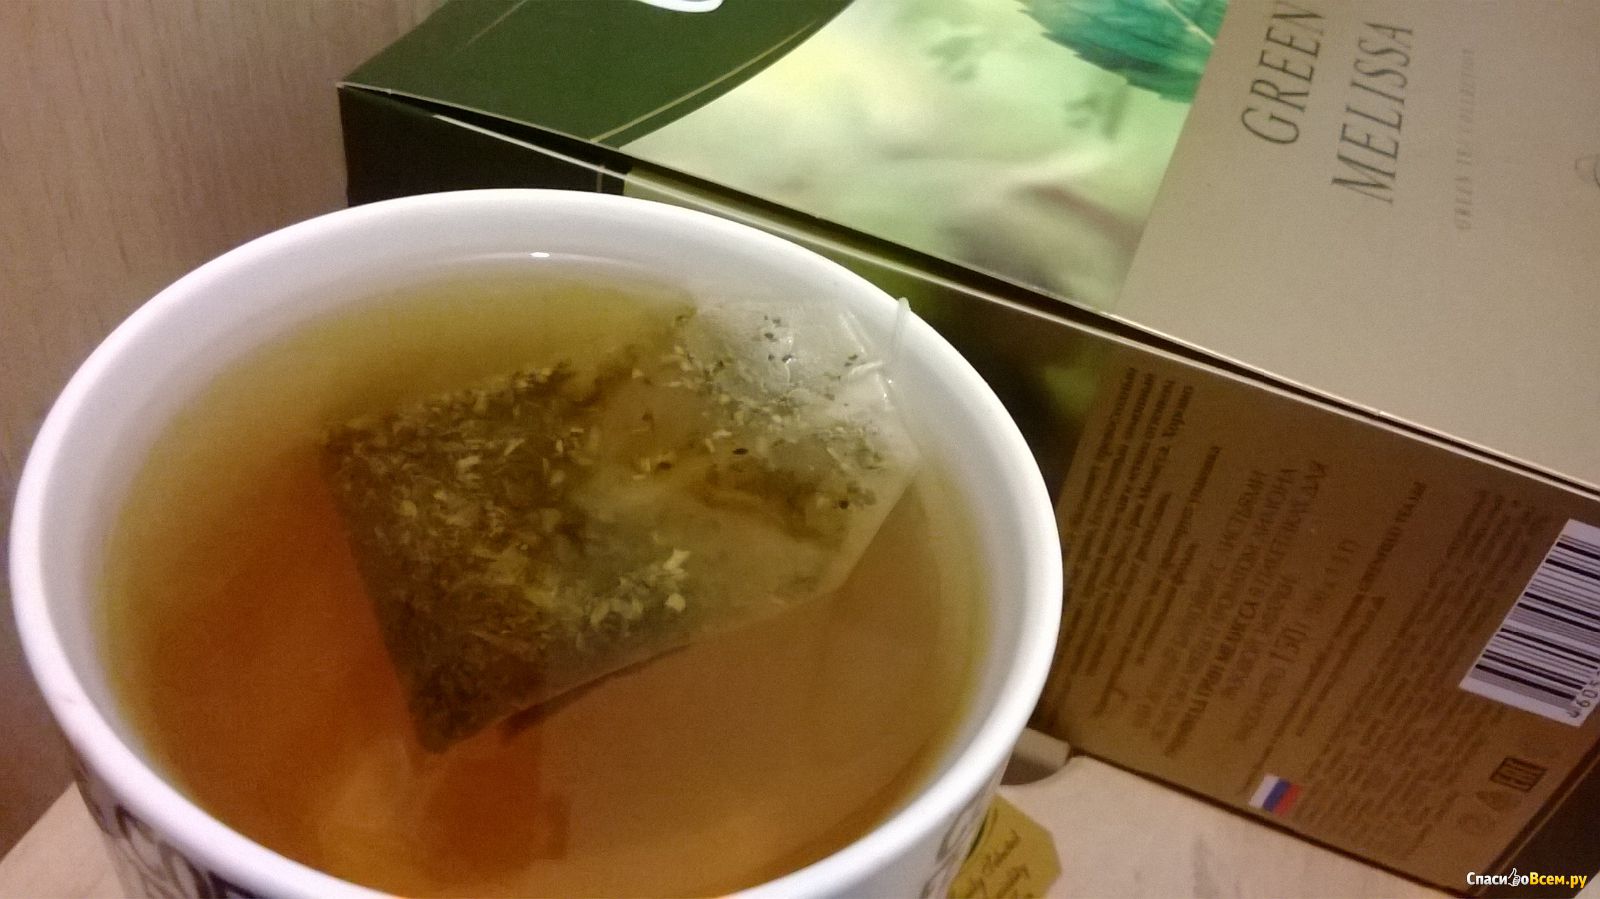 Чайные пакетики заваренные. Заварка зеленого чая в пакетиках. Заваривается пакетикчай. Пакетированный чай зеленый заваренный. Бульон в пакетиках.